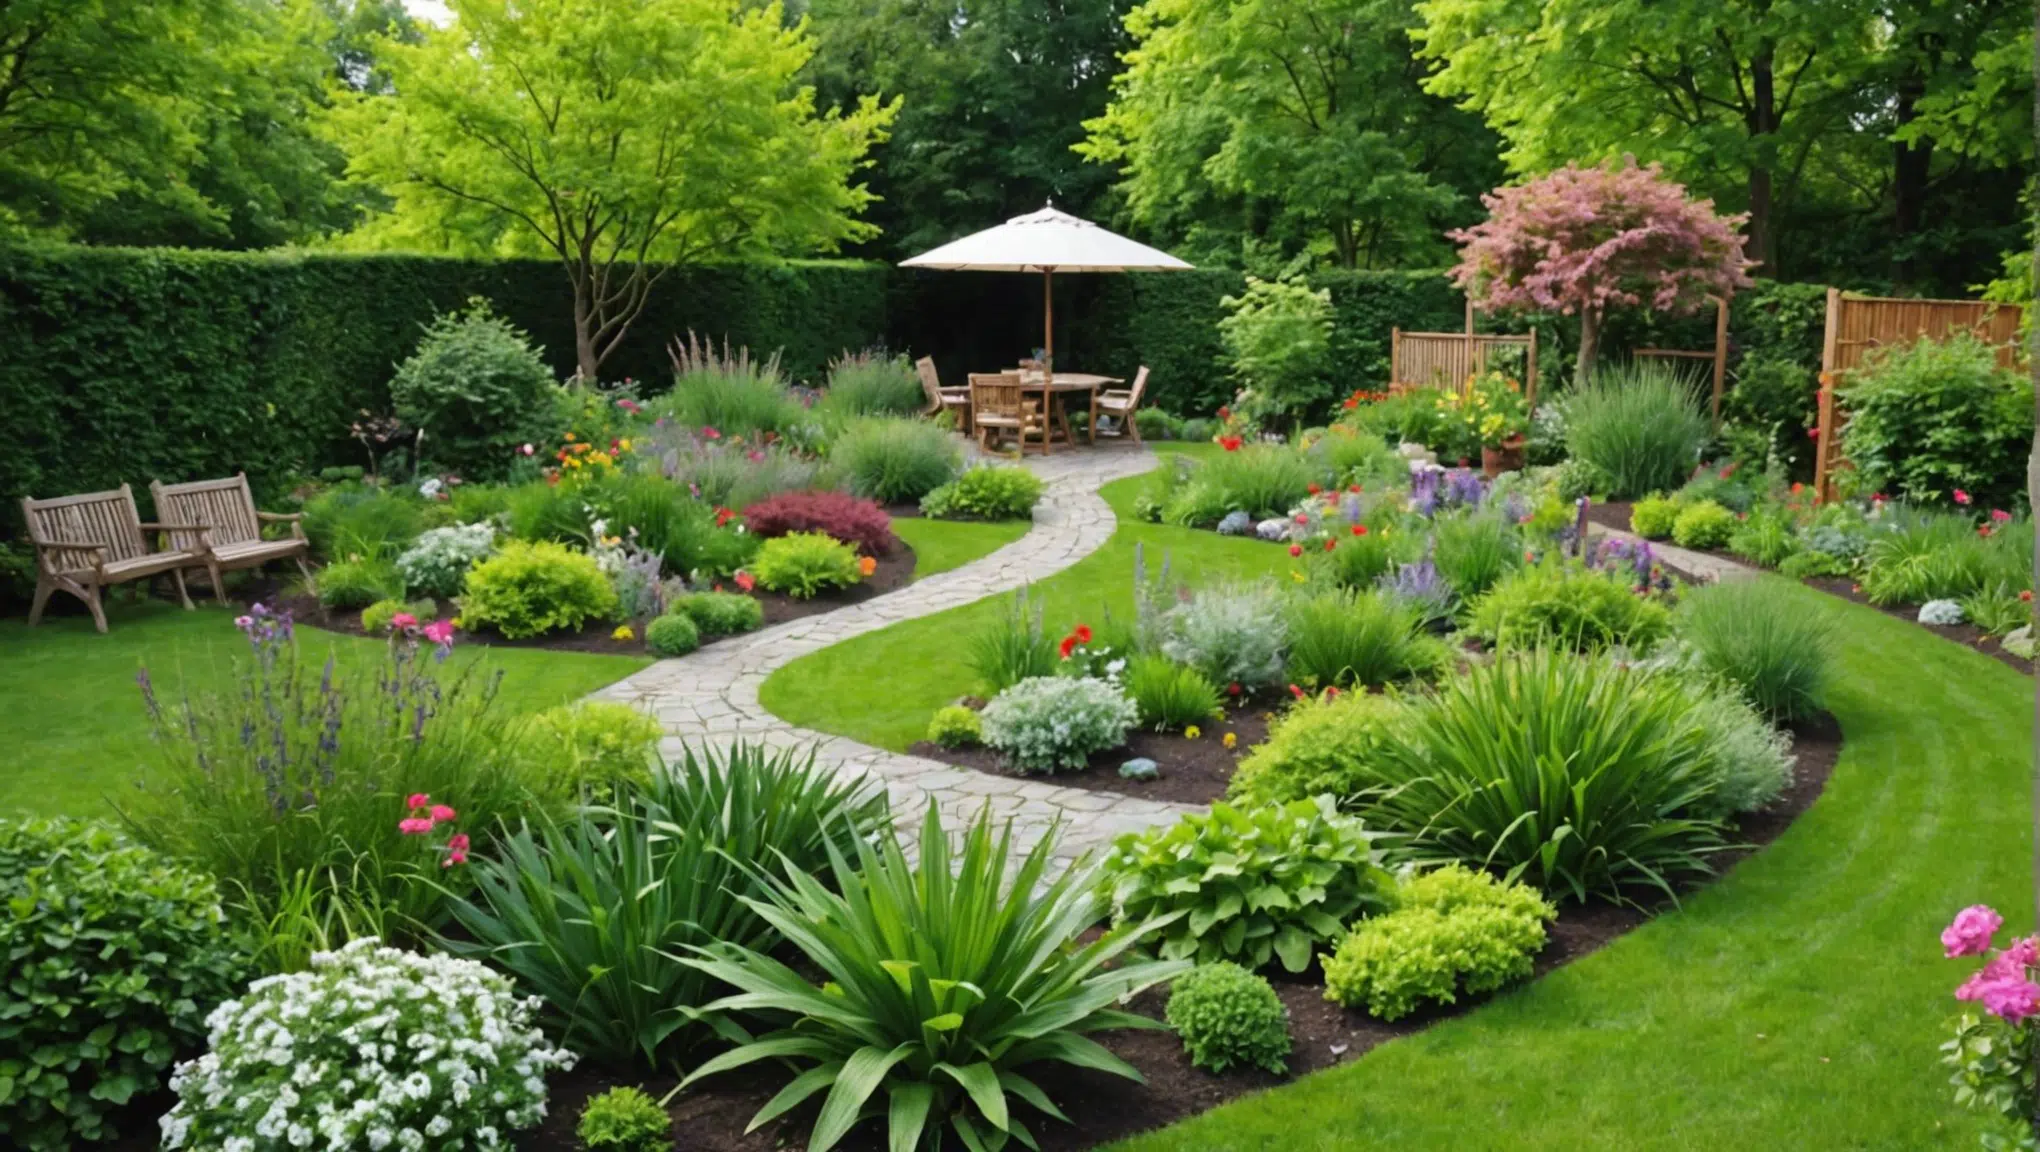 découvrez comment transformer votre jardin en un paradis écologique en suivant 5 étapes simples pour une harmonie parfaite avec la nature.